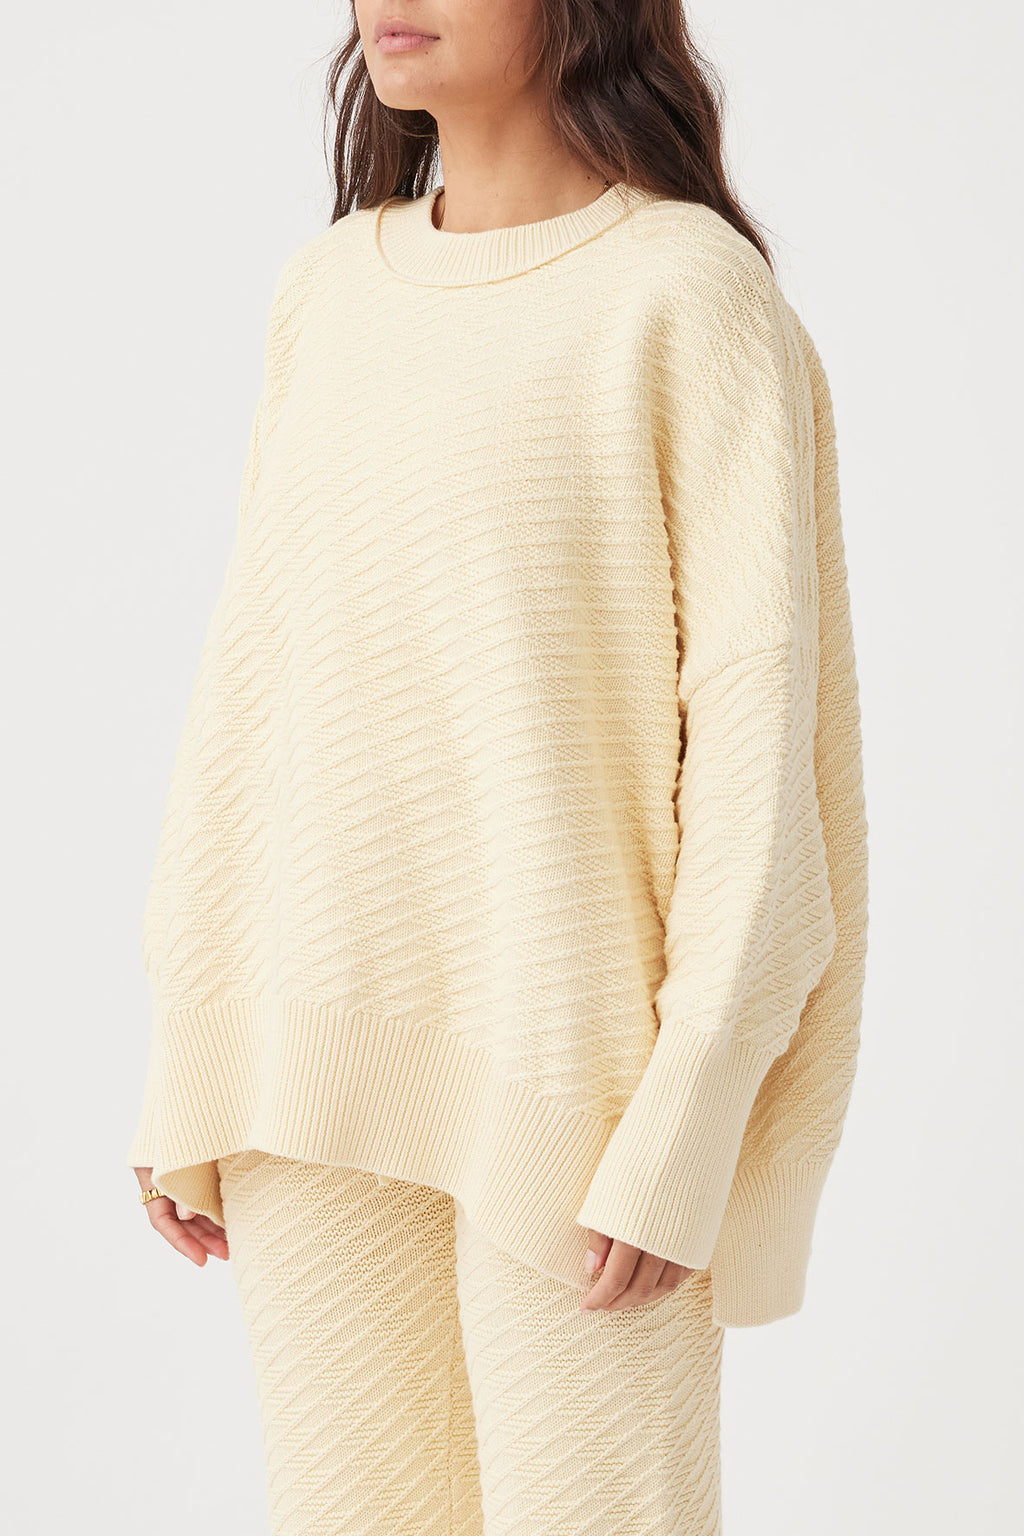 Vivi Sweater - Butter